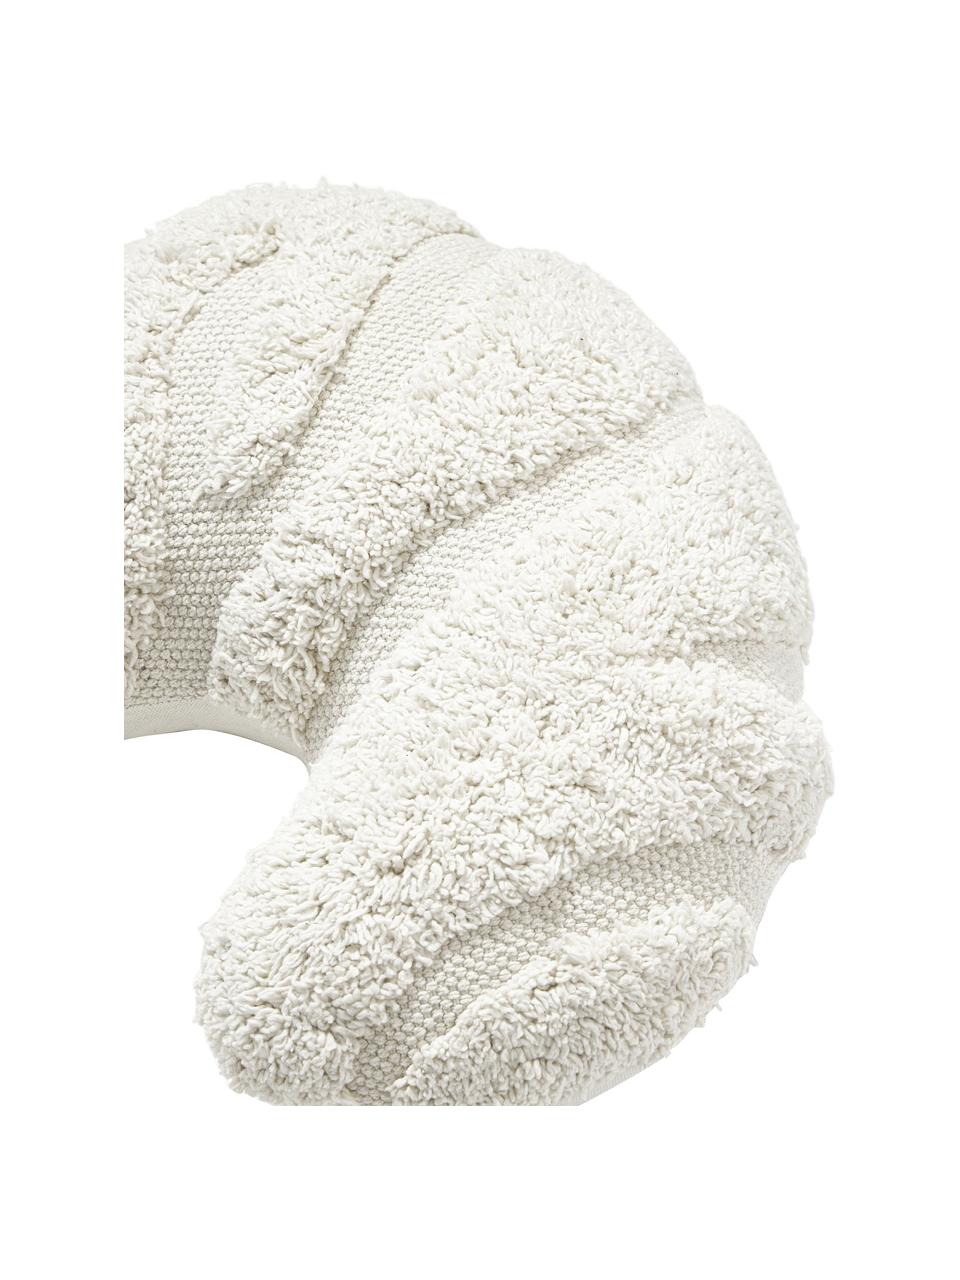 Poduszka w stylu boho Laerke, Tapicerka: 100% bawełna organiczna z, Kremowobiały, S 40 cm